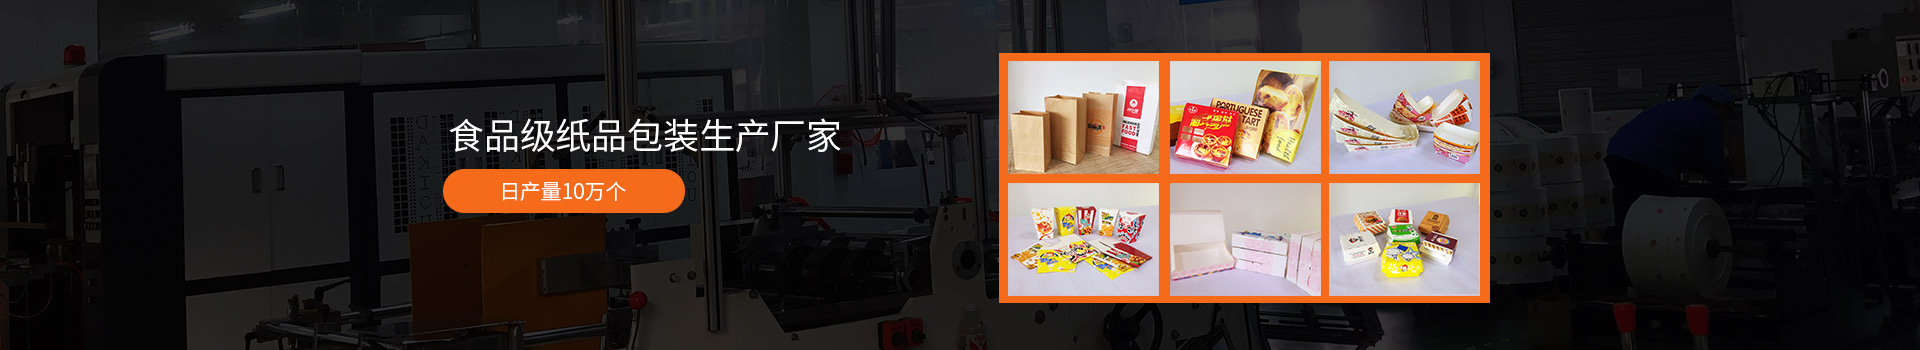 星朗纸品-食品级纸品包装生产厂家 日产量10万个